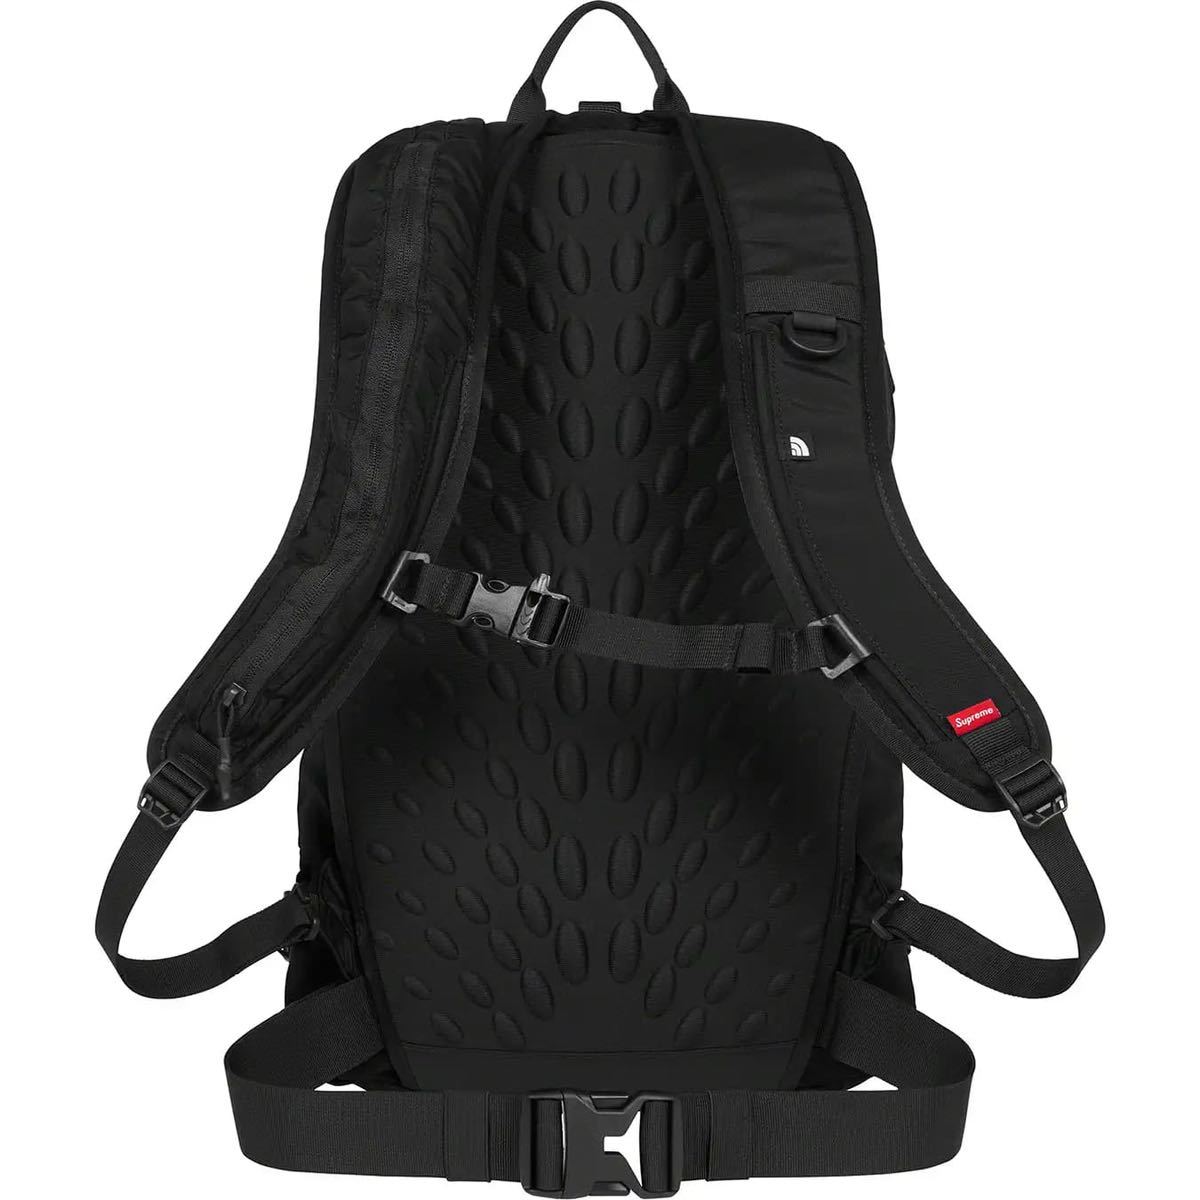 新品Supreme 22SS North Face Summit Series Rescue Chugach 16 Backpack  シュプリームノースフェイスバックパックBlack ブラック黒的详细信息| 雅虎拍卖代拍| FROM JAPAN